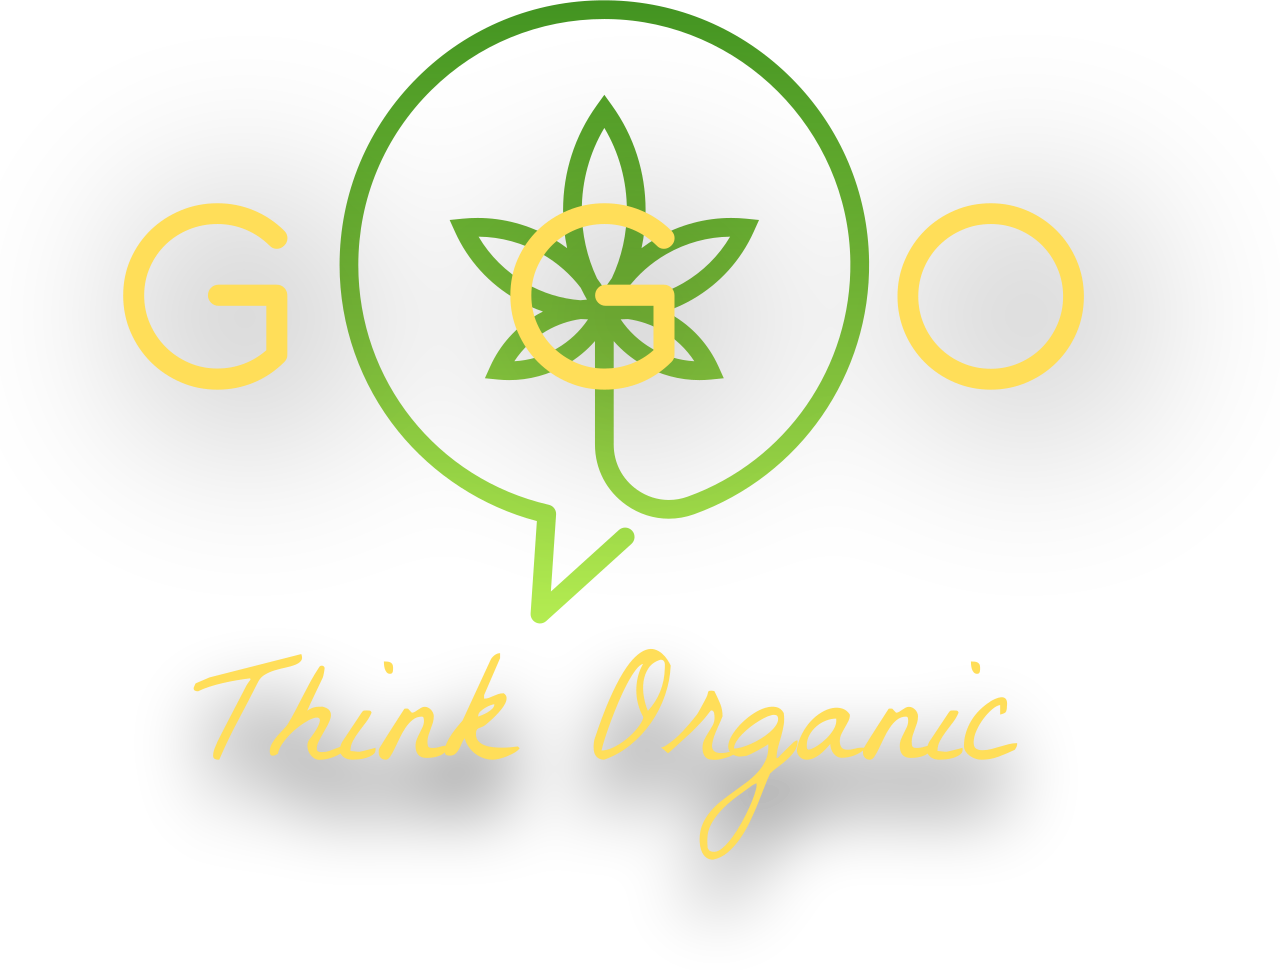 GGO's logo